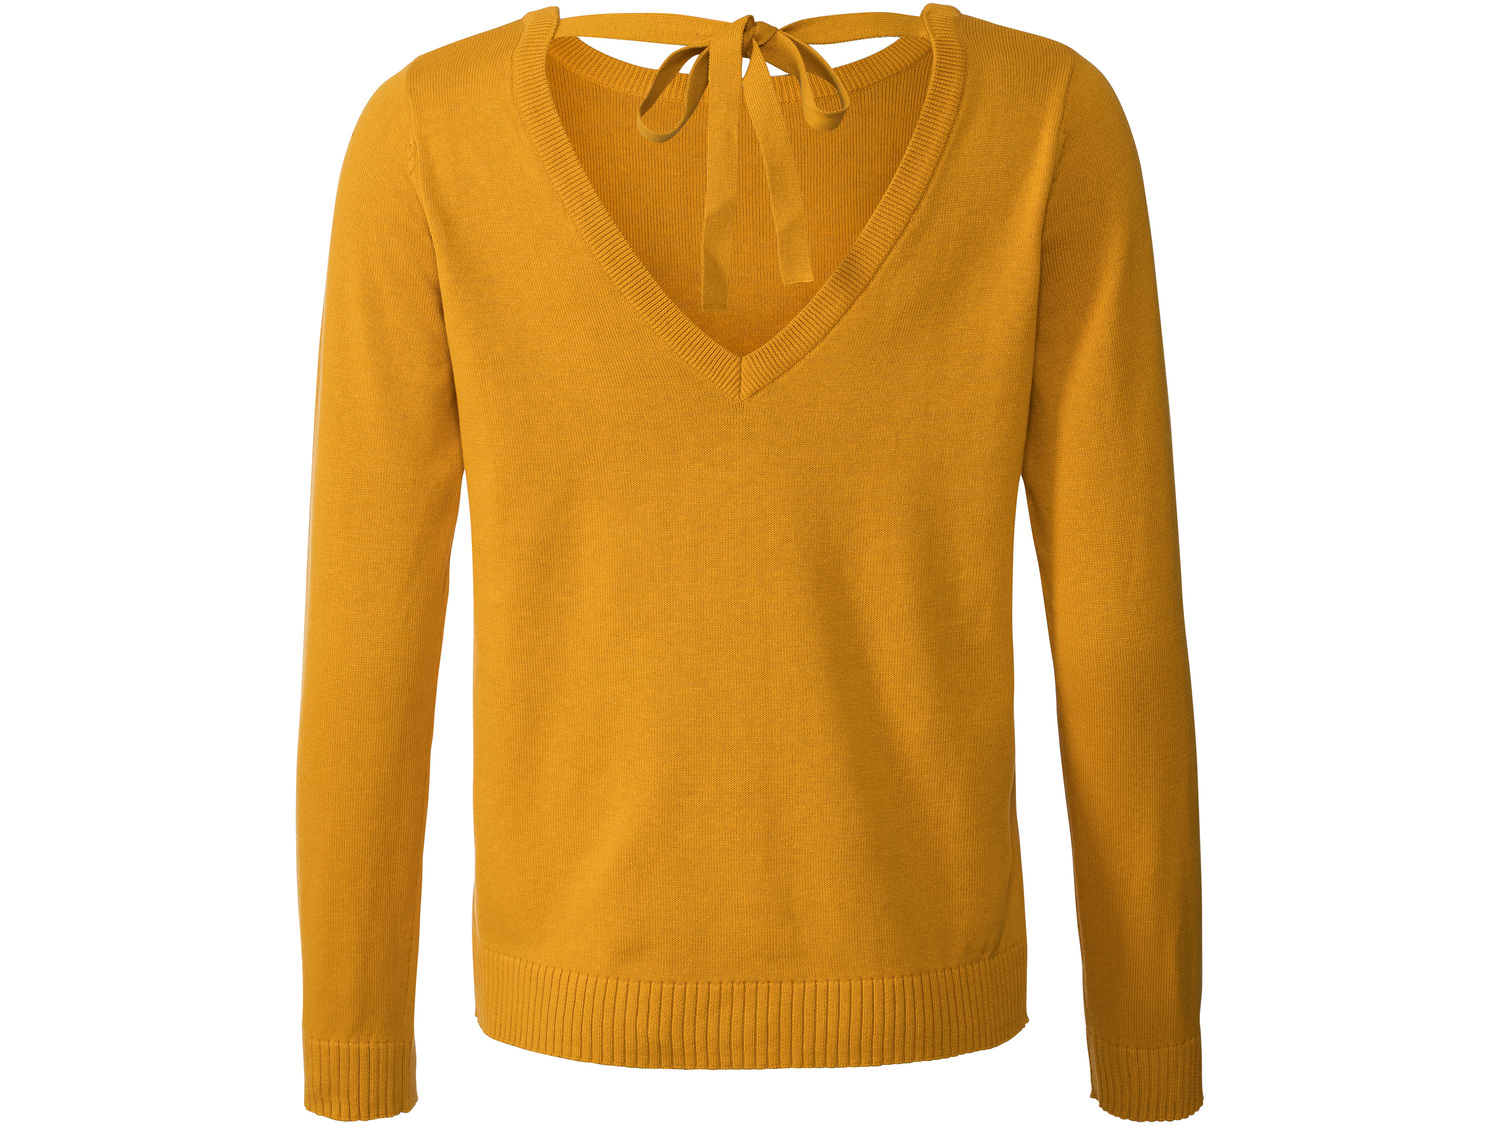 Sweter damski z bawełny Esmara, cena 34,99 PLN 
- 100% bawełny
- rozmiary: S-L
- ...